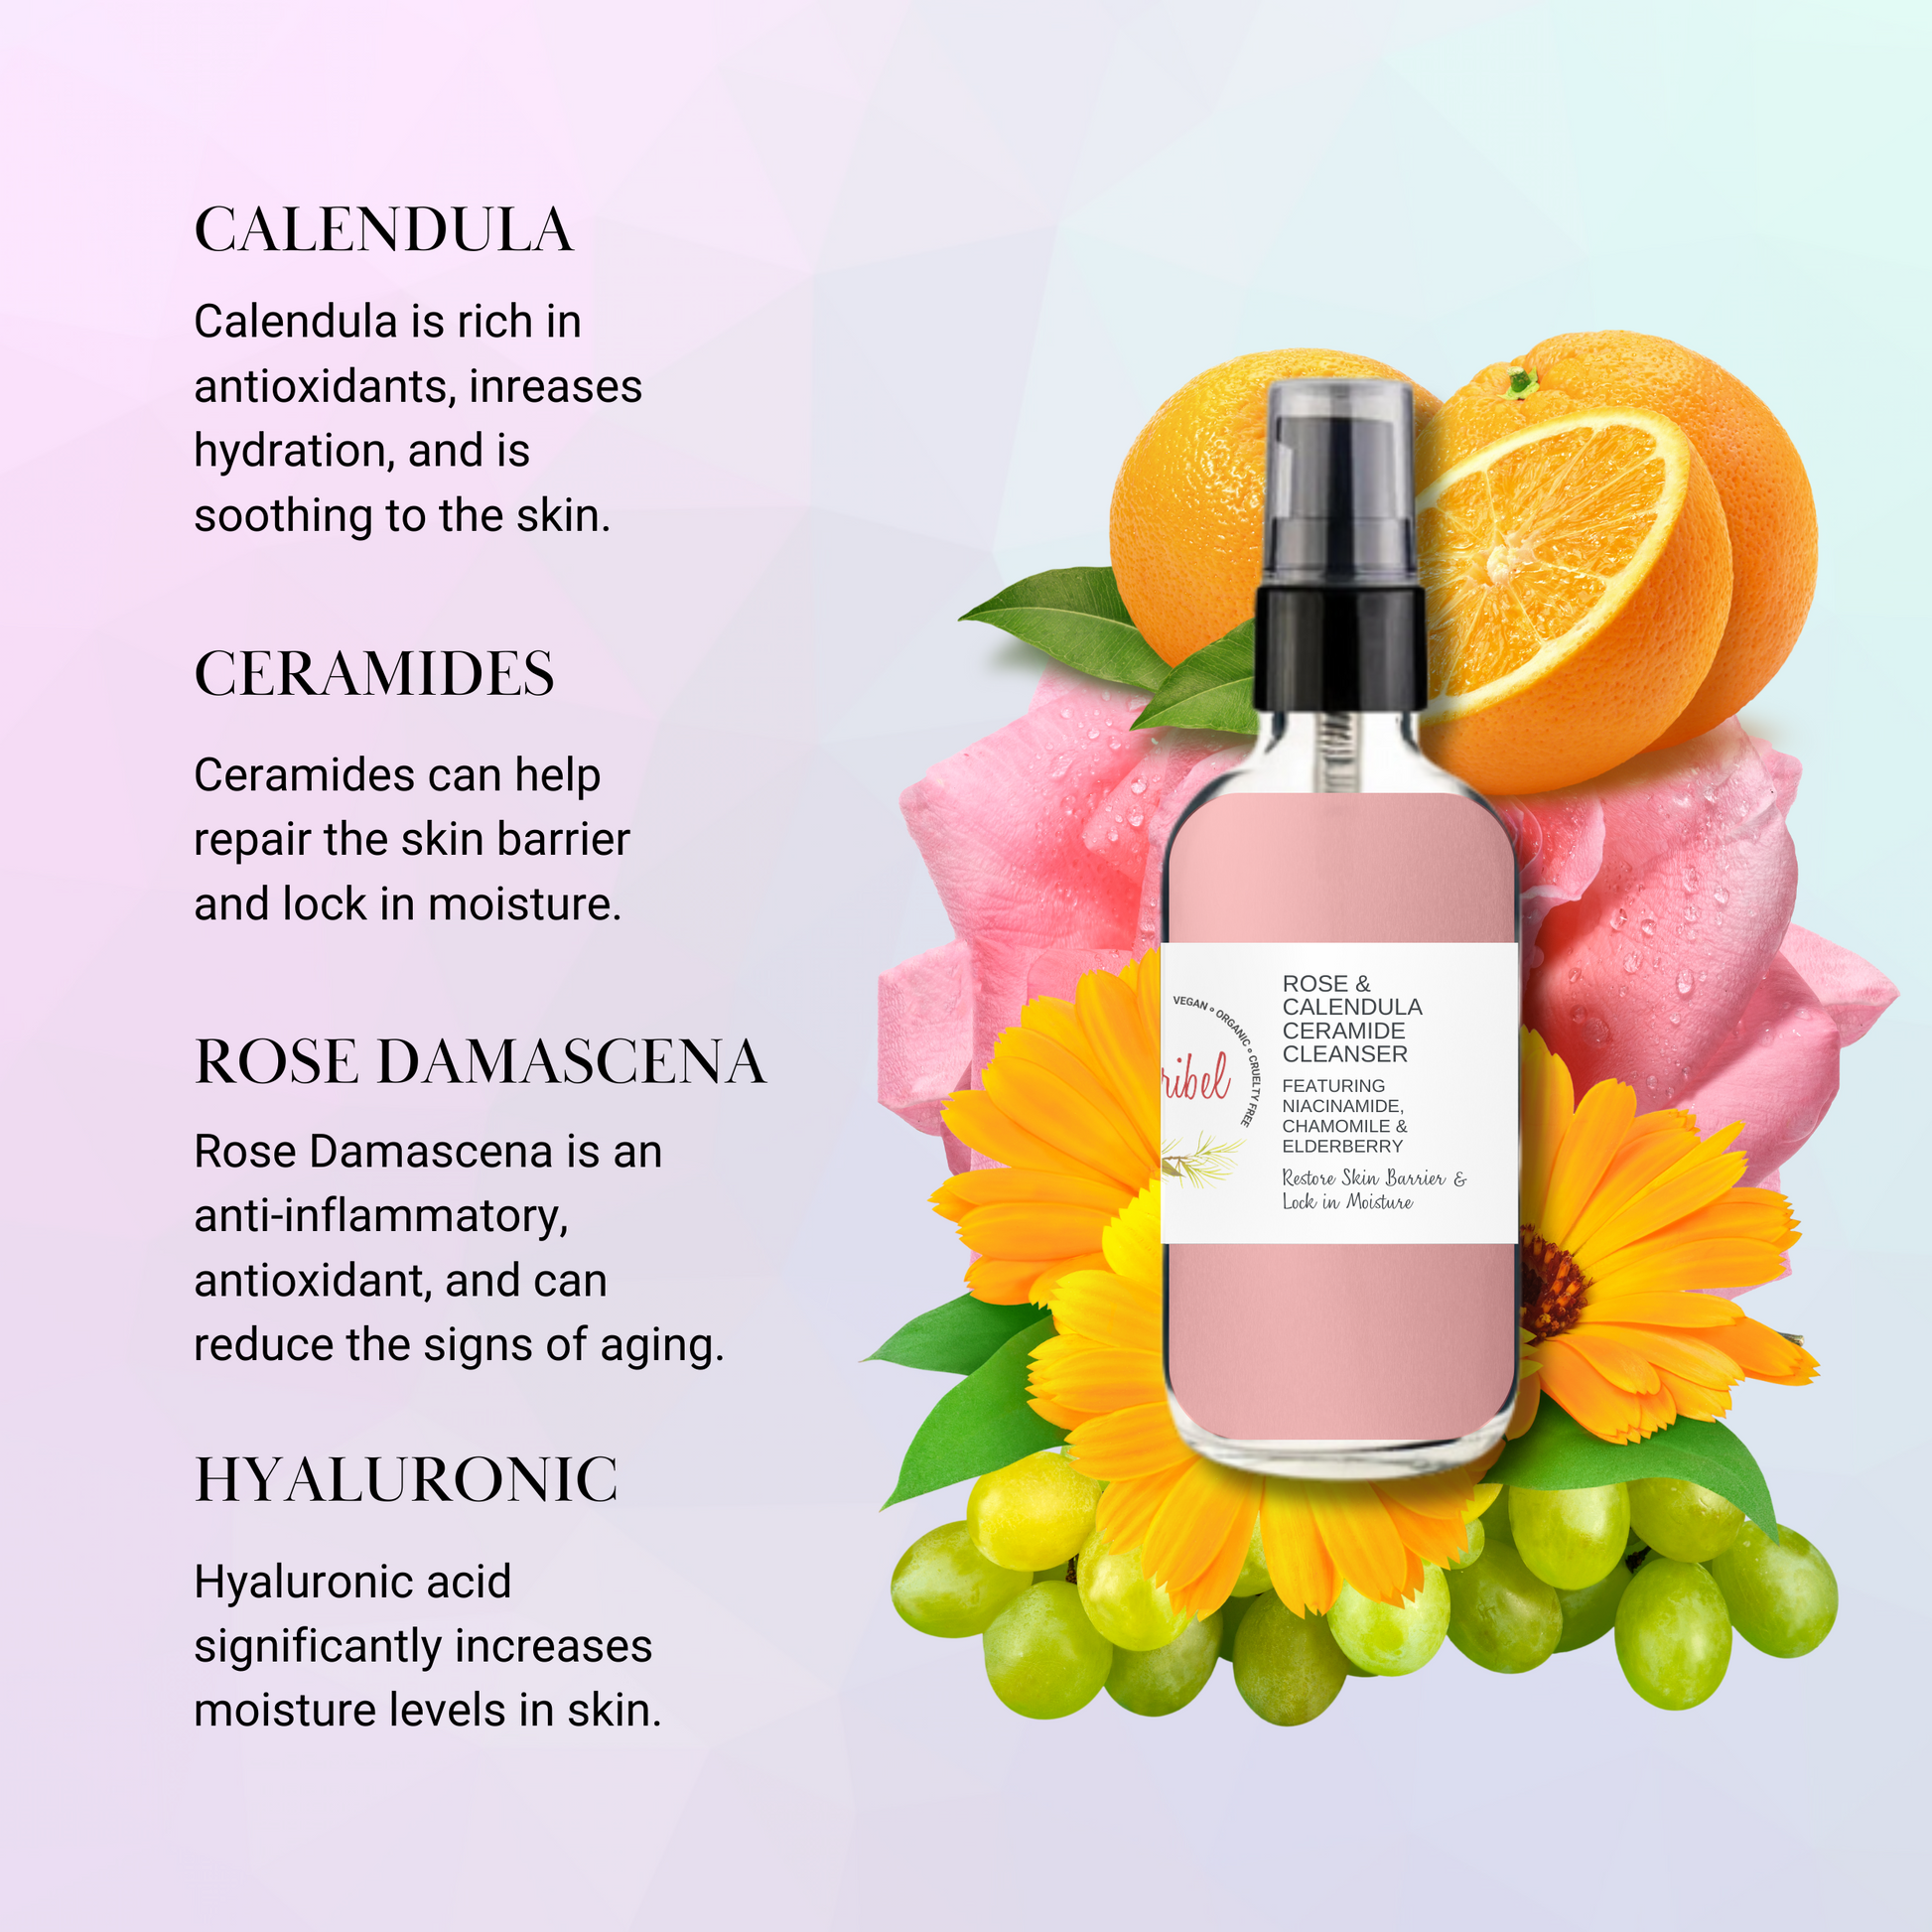 Rose & Calendula Ceramide Cleanser 